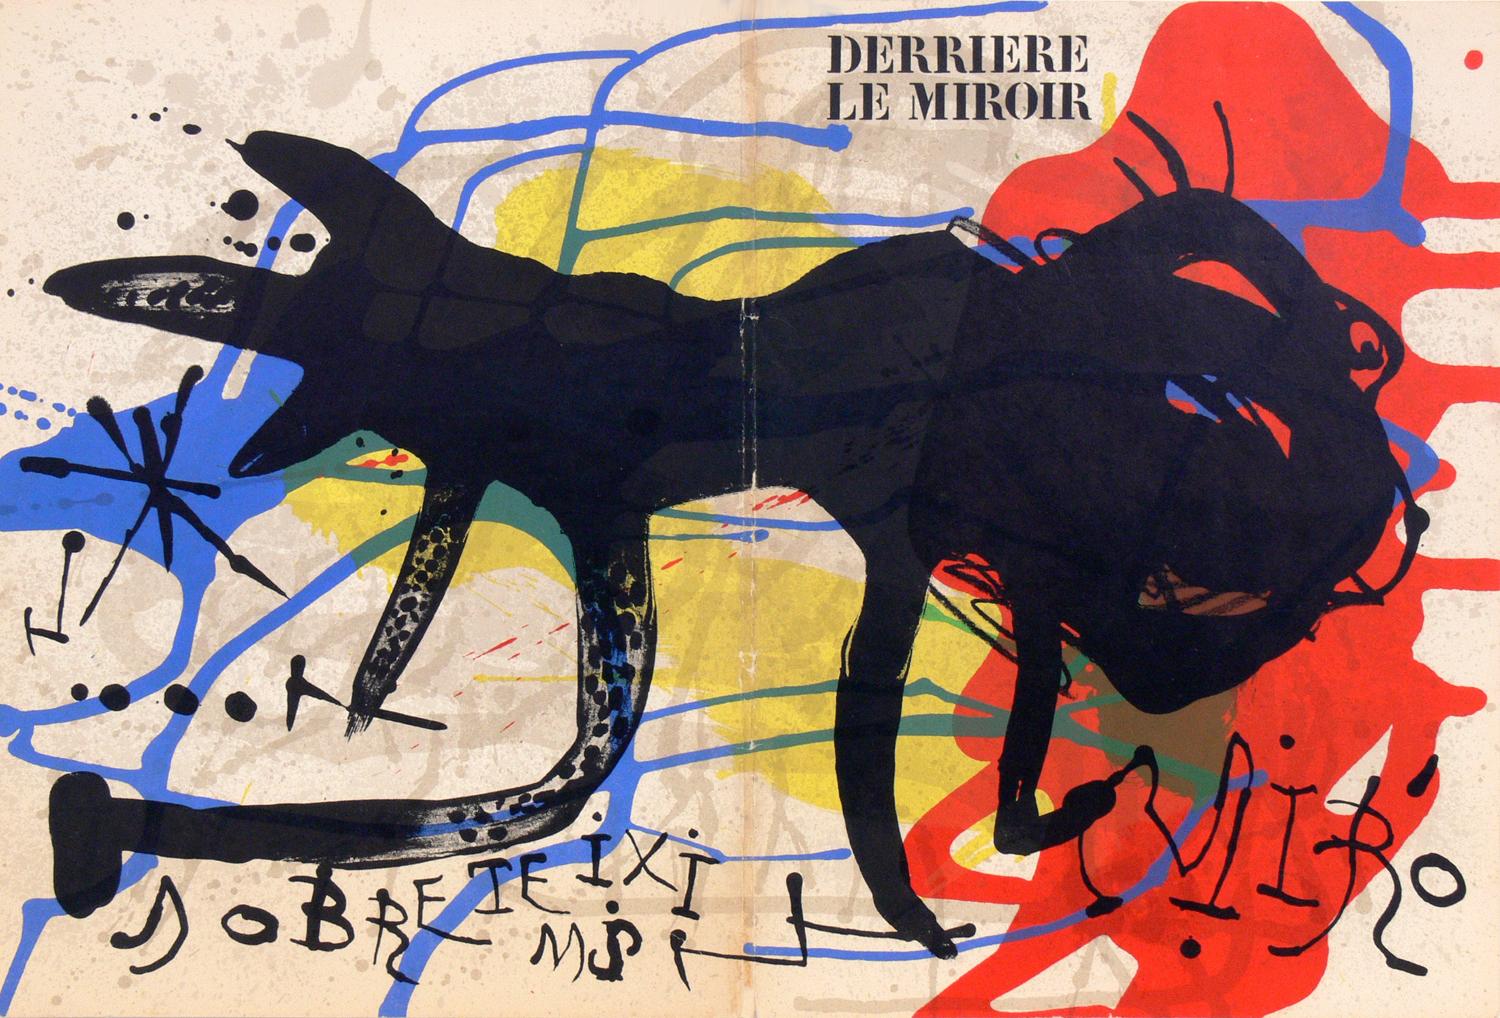 Sélection de lithographies modernistes pour galerie murale, françaises, vers les années 1960. De haut en bas, de gauche à droite, ce sont :
1) Lithographie en couleurs de Joan Miro, tirée de Derriere Le Miroir, vers les années 1960. Vu en haut à